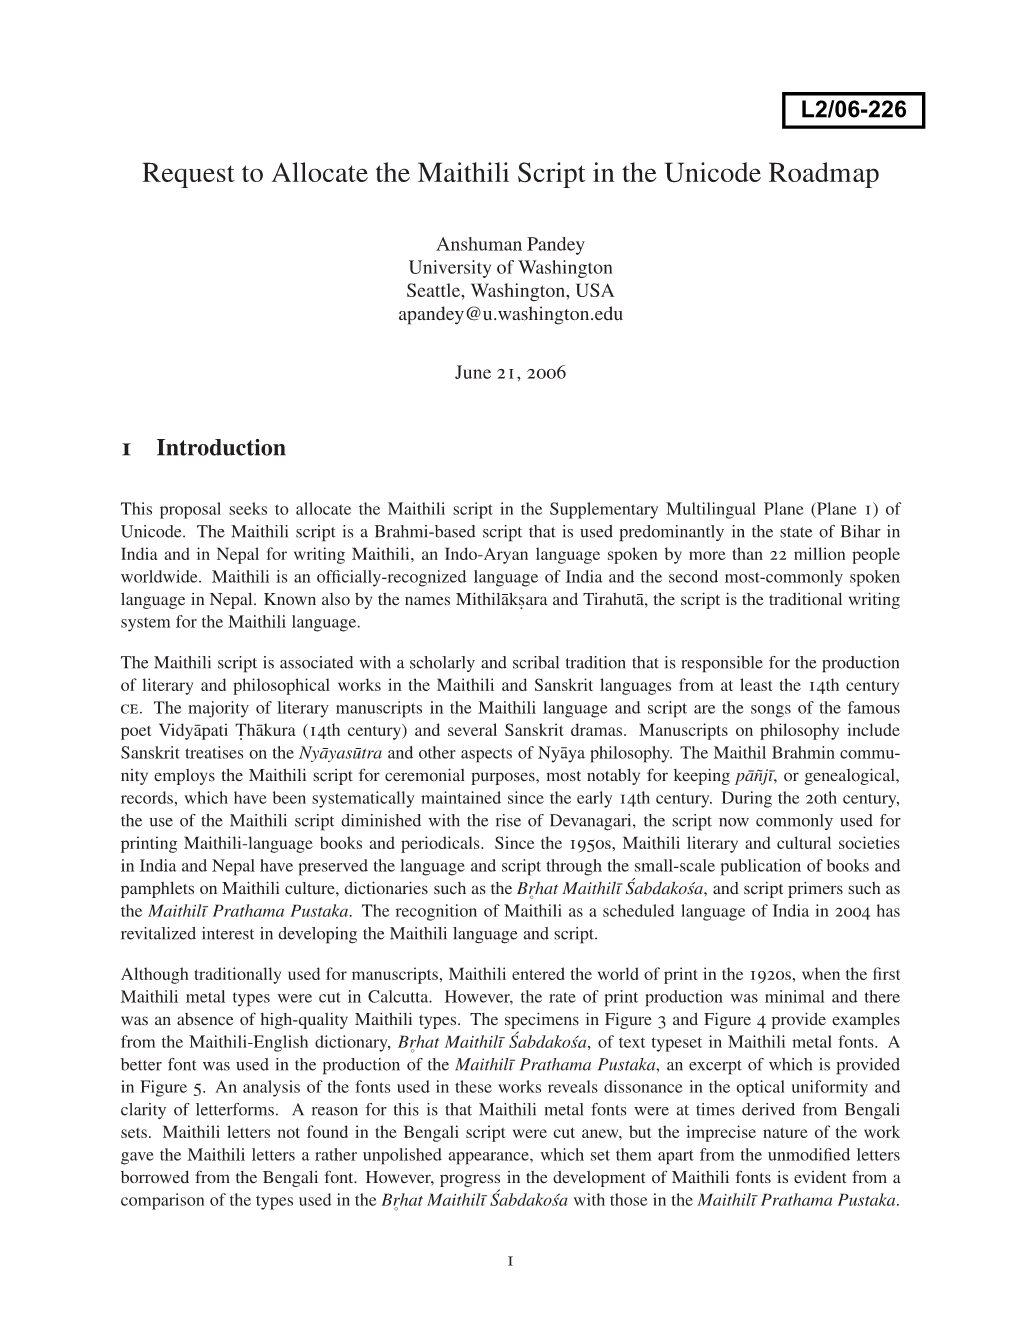 Request to Allocate the Maithili Script in the Unicode Roadmap